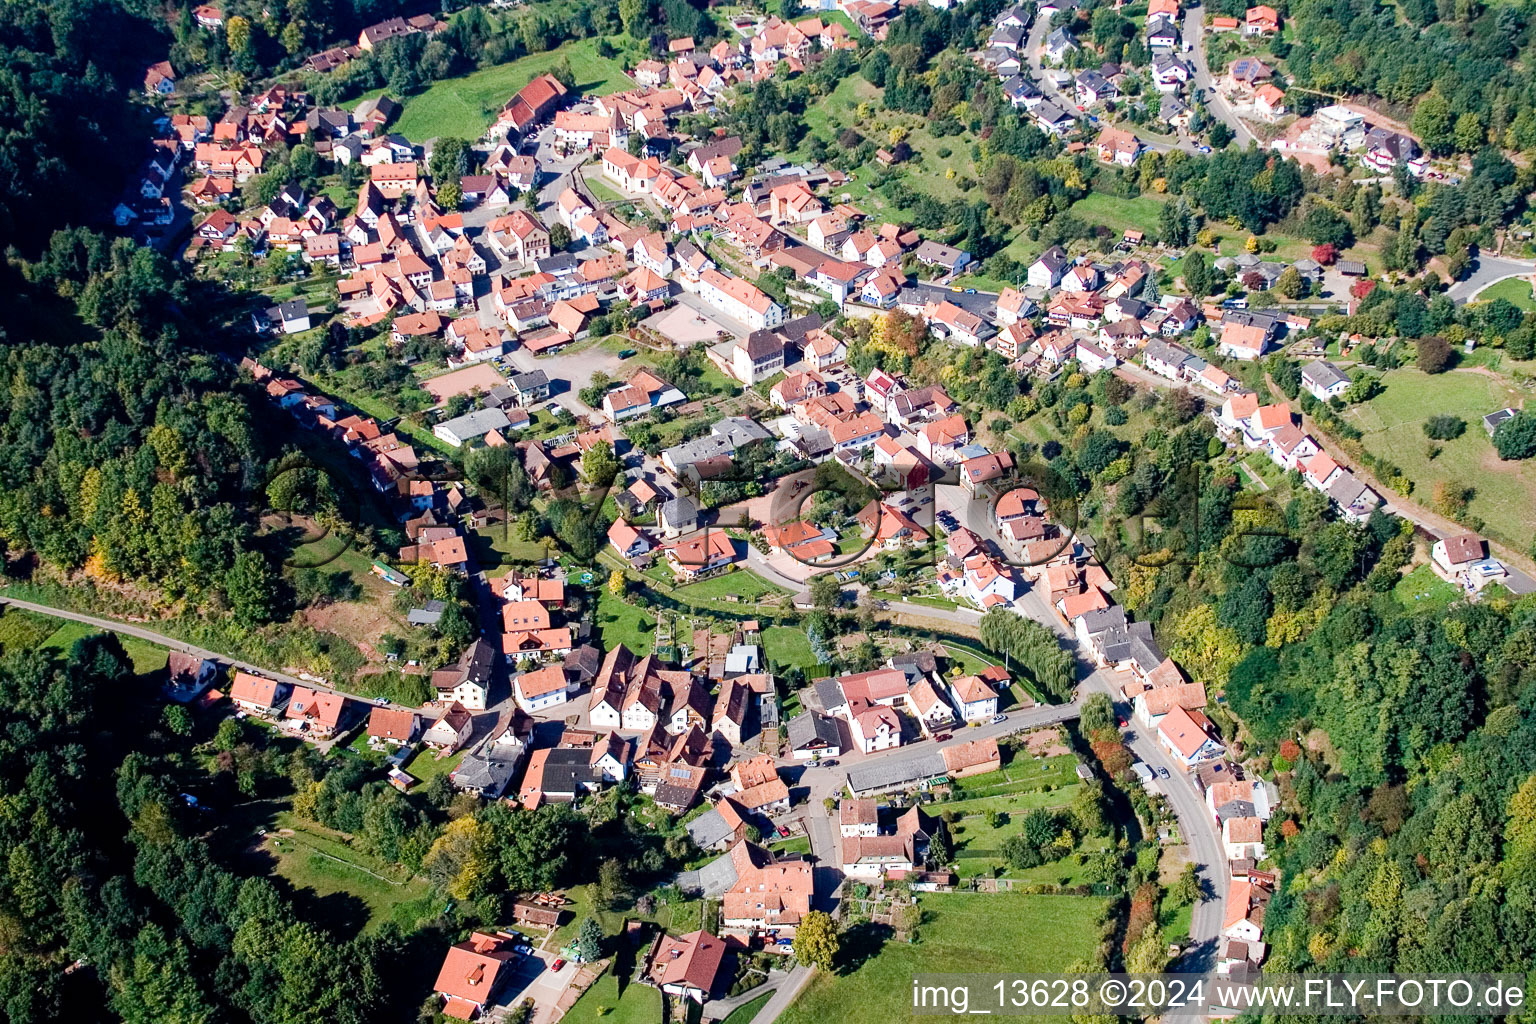 Bundenthal im Bundesland Rheinland-Pfalz, Deutschland aus der Drohnenperspektive